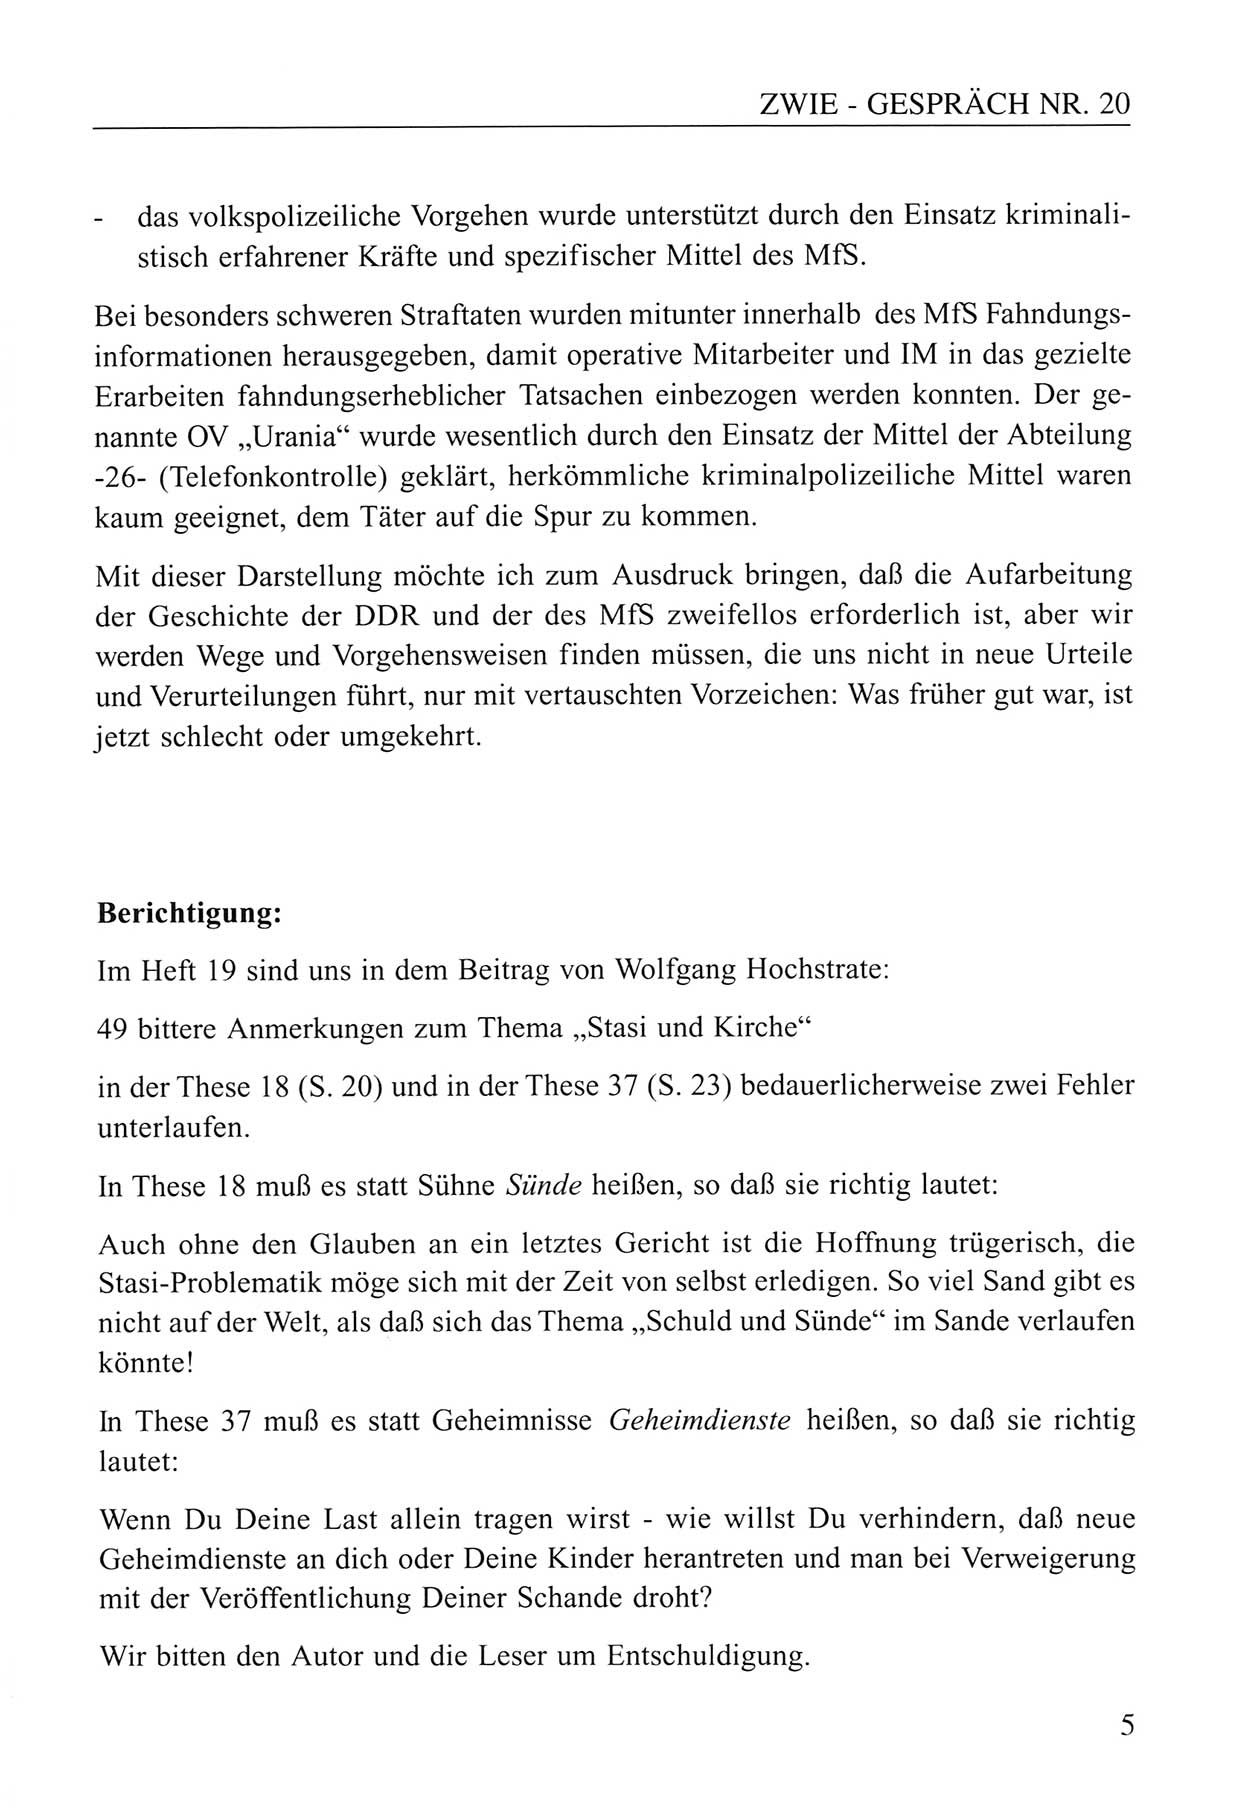 Zwie-Gespräch, Beiträge zum Umgang mit der Staatssicherheits-Vergangenheit [Deutsche Demokratische Republik (DDR)], Ausgabe Nr. 20, Berlin 1994, Seite 5 (Zwie-Gespr. Ausg. 20 1994, S. 5)